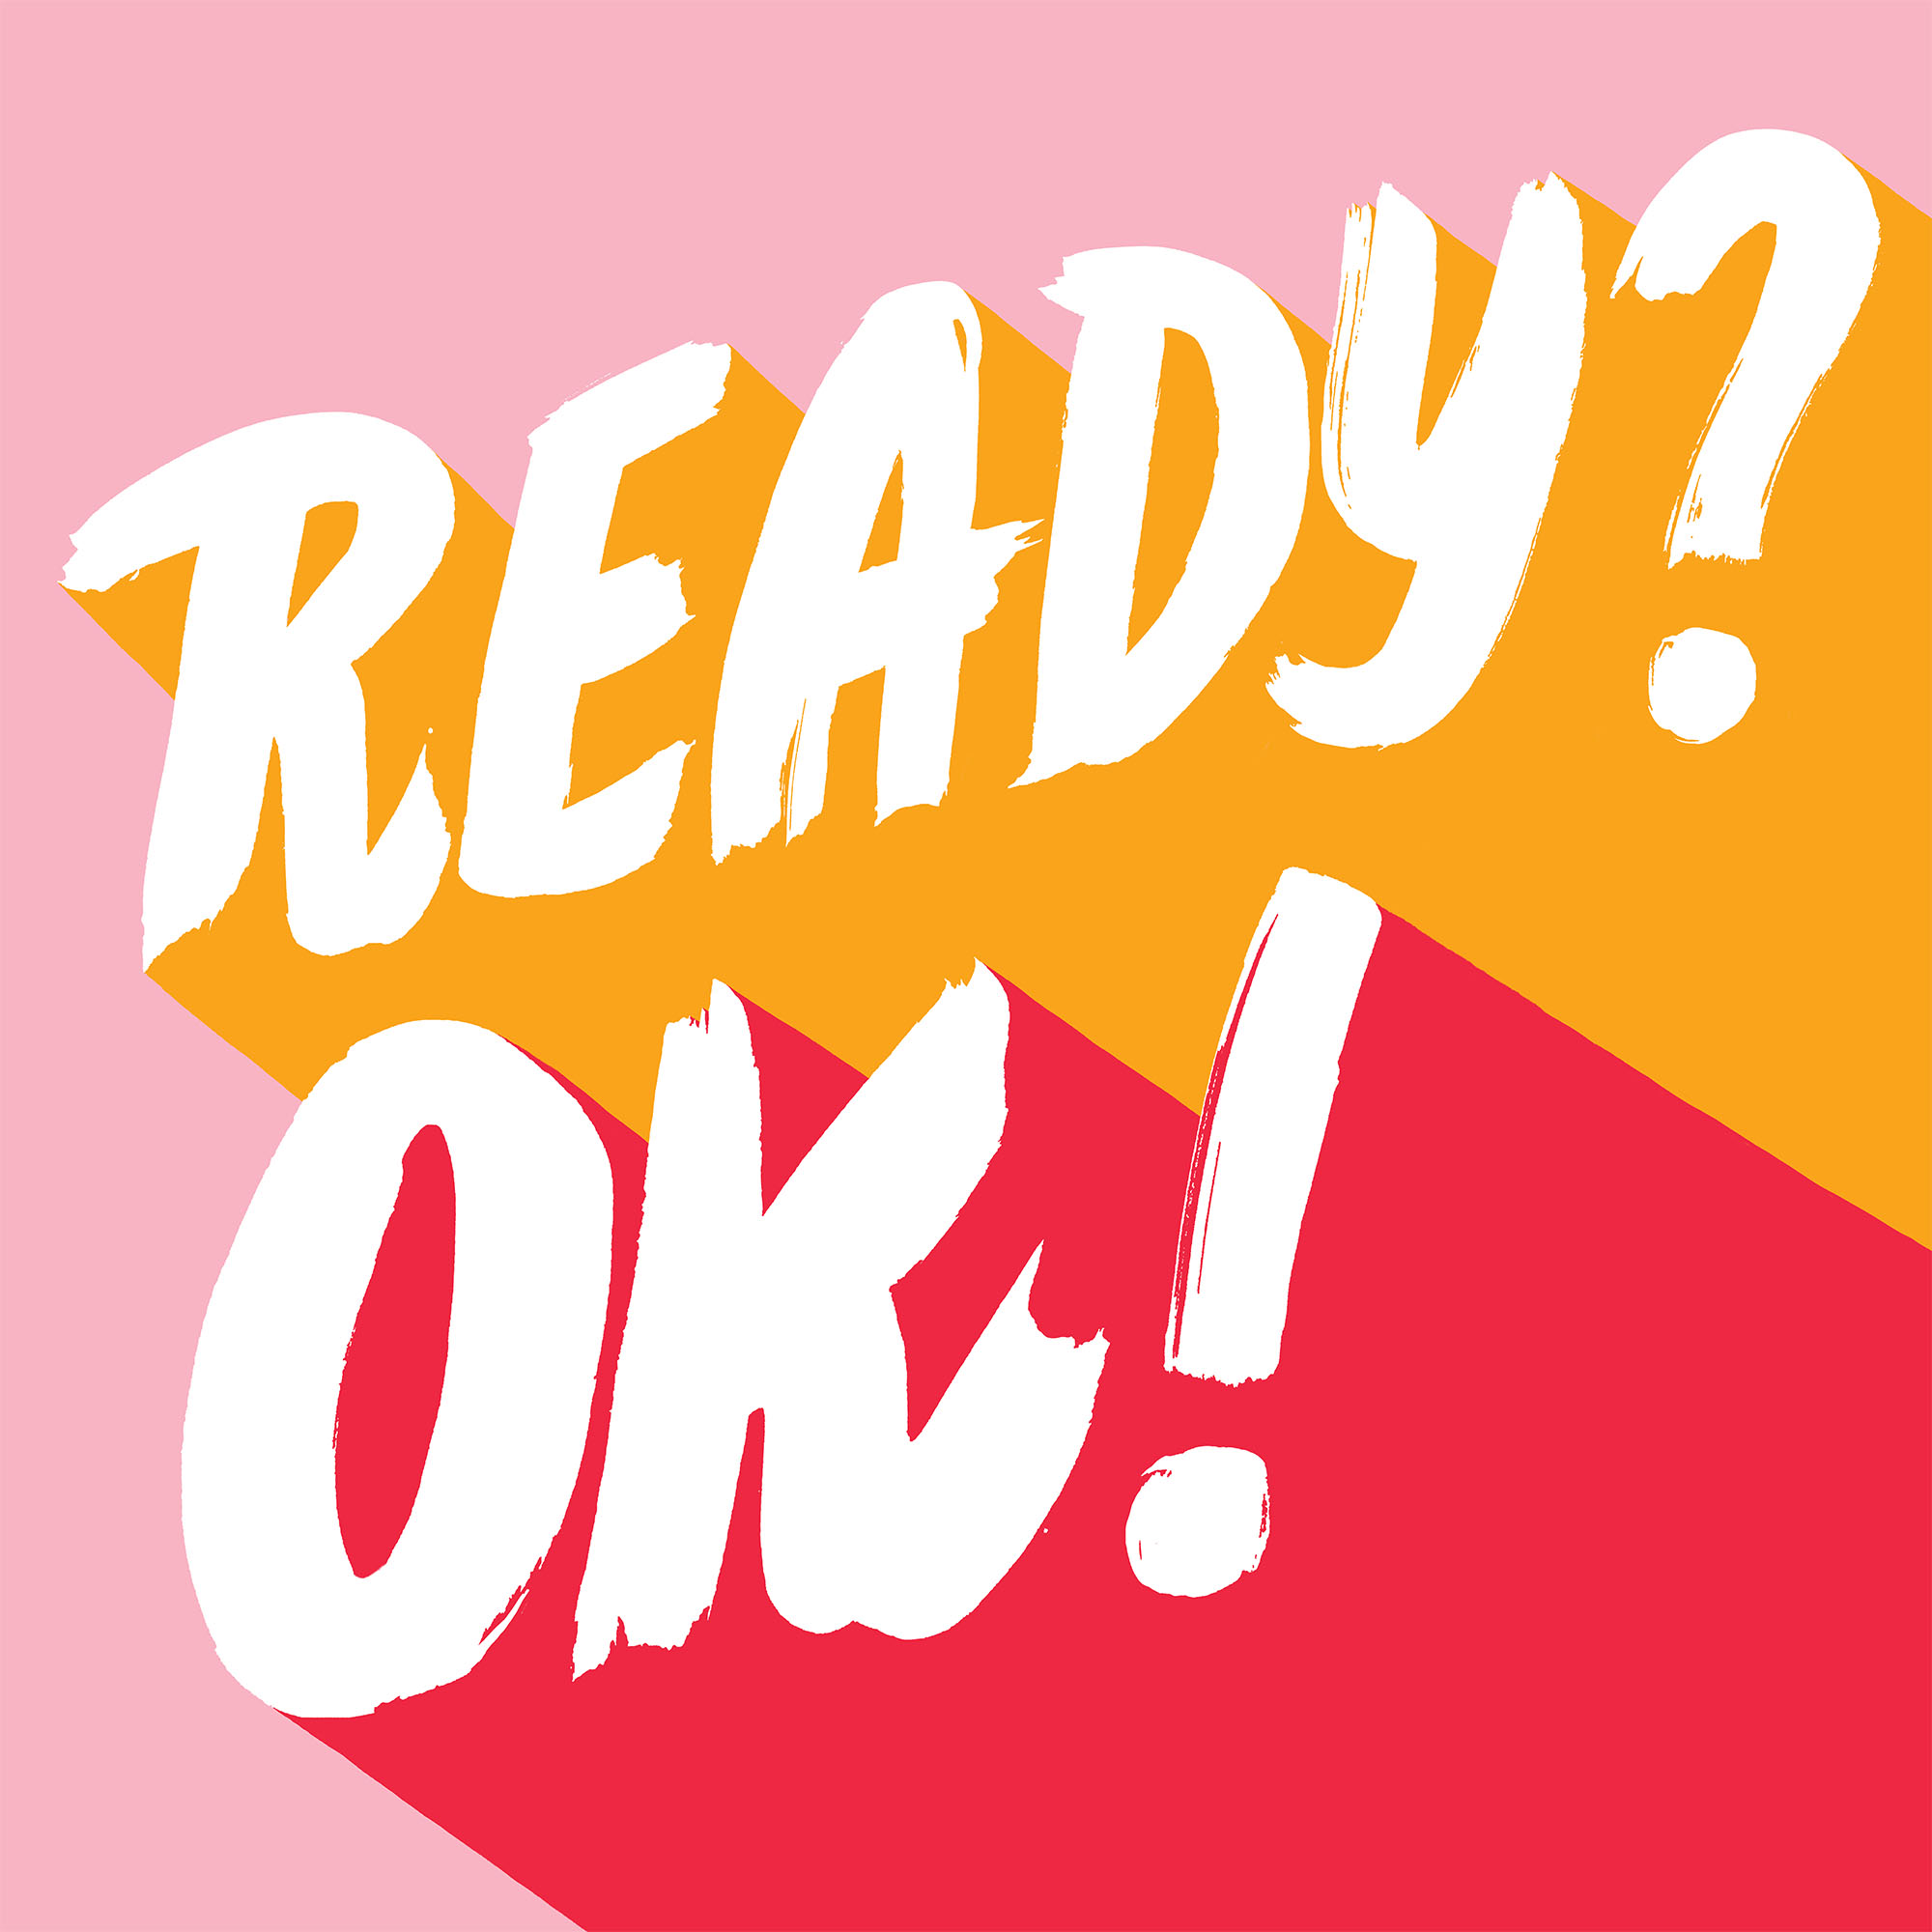 Ready?Ok!